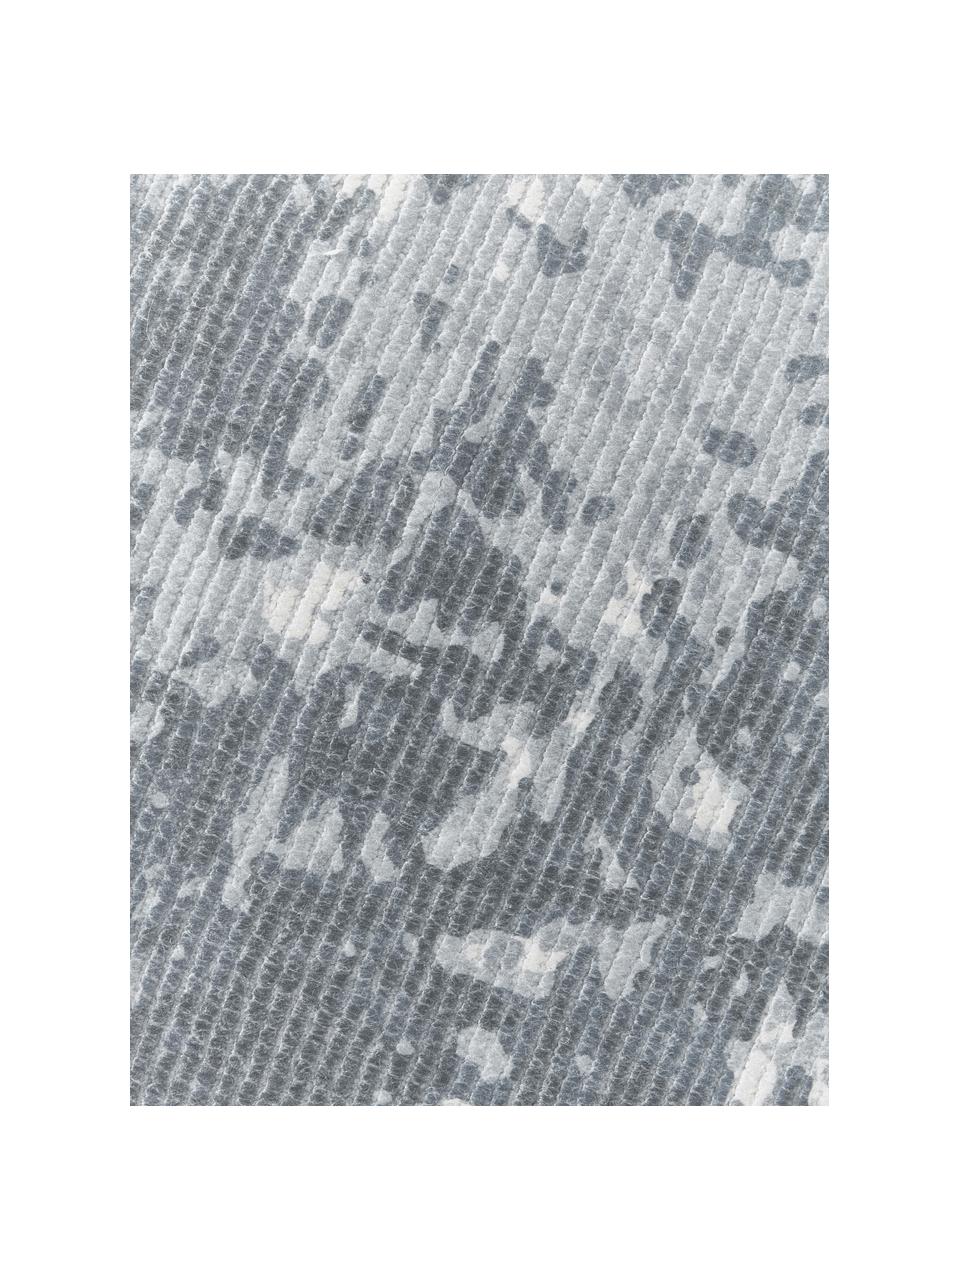 Tapis à poils ras tissé main Nantes, 100 % polyester, certifié GRS, Gris-bleu, larg. 120 x long. 180 cm (taille S)